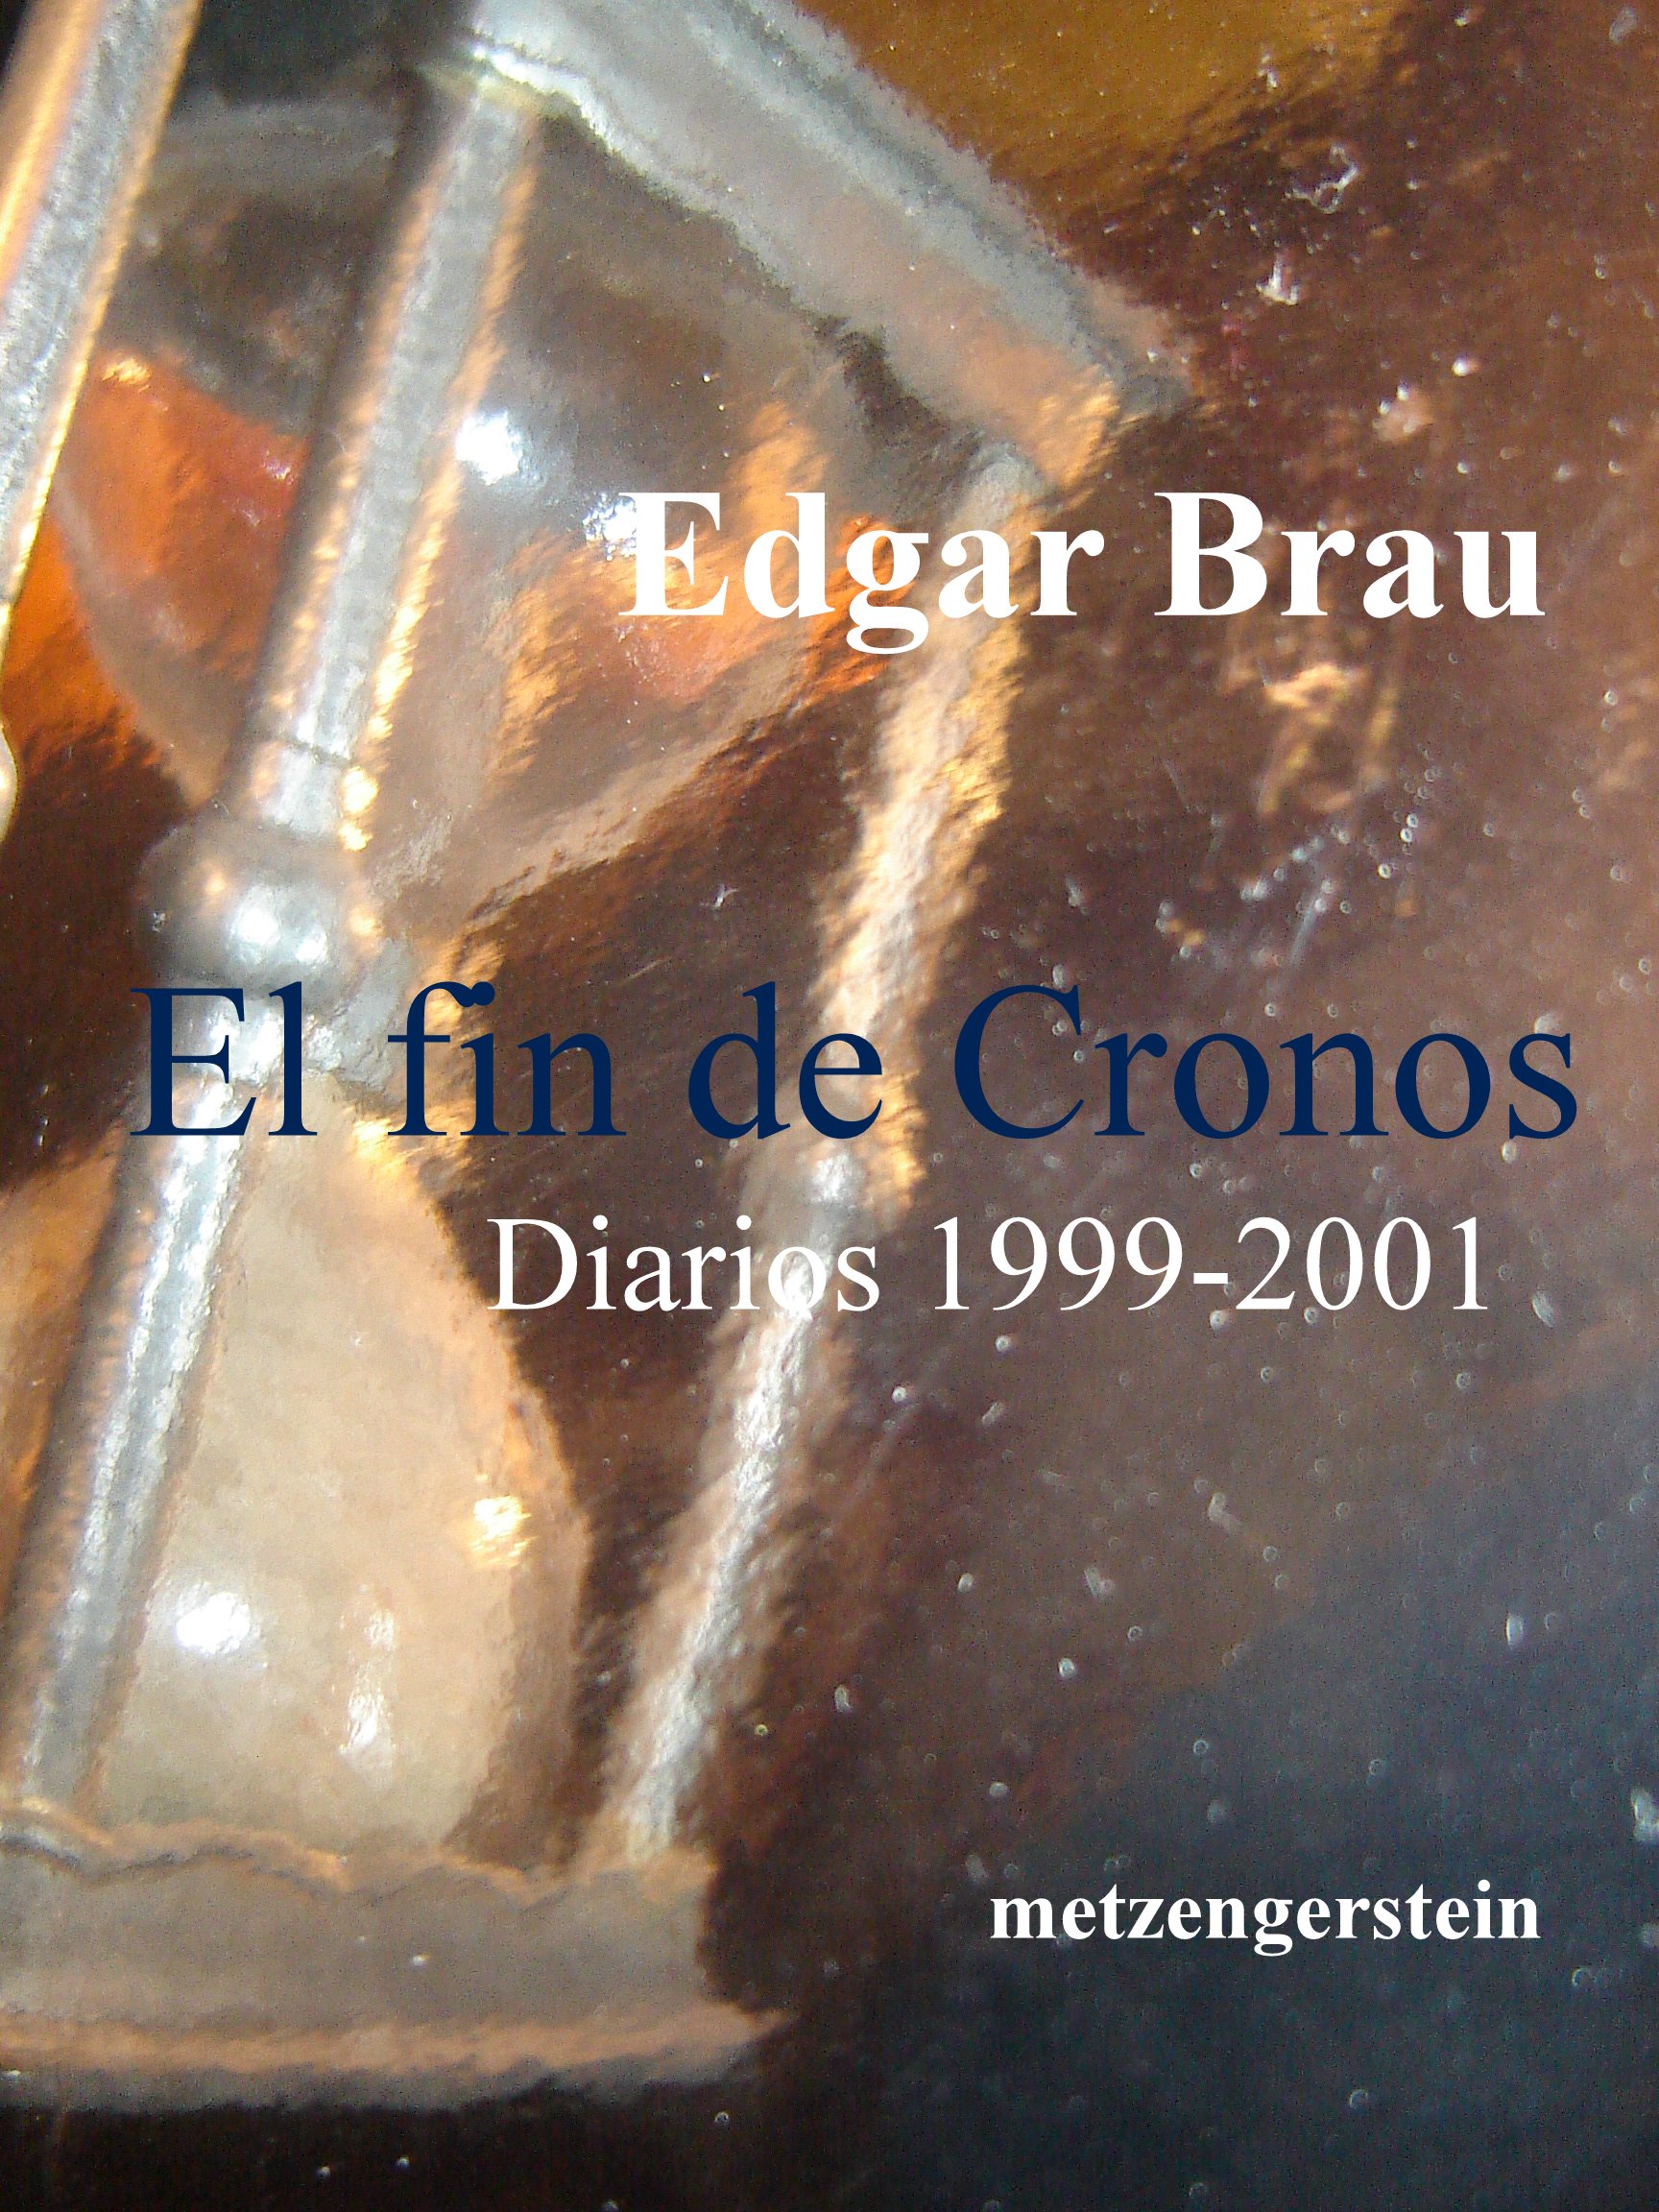 http://www.edgarbrau.com.ar/Edgar%20Brau%20-%20La%20Torre%20y%20Babel_archivos/La_Torre_y_Babel.jpg